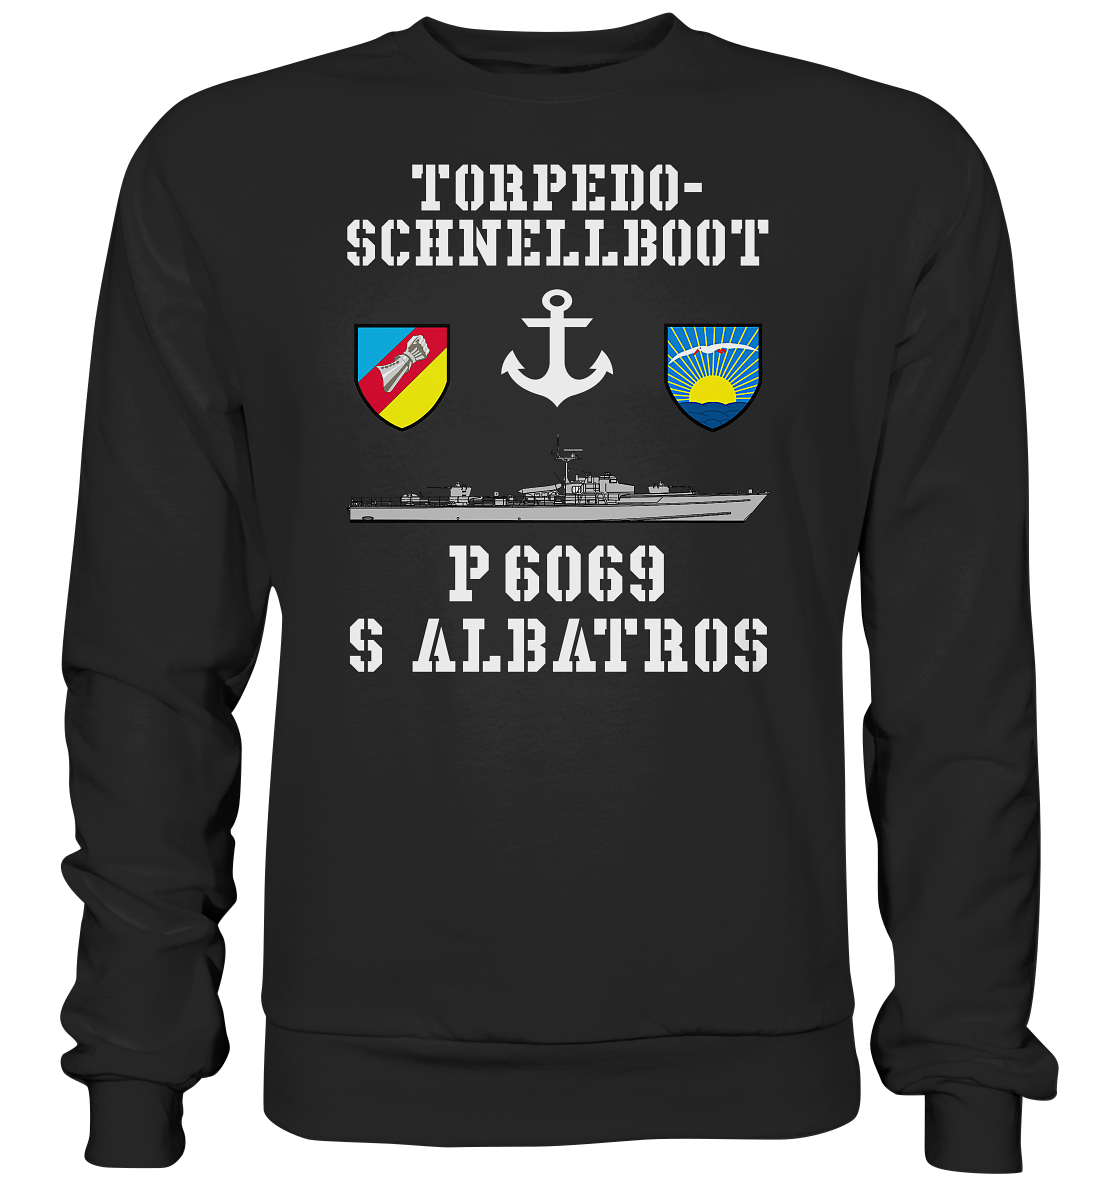 Torpedo-Schnellboot P6069 ALBATROS Anker - Premium Sweatshirt